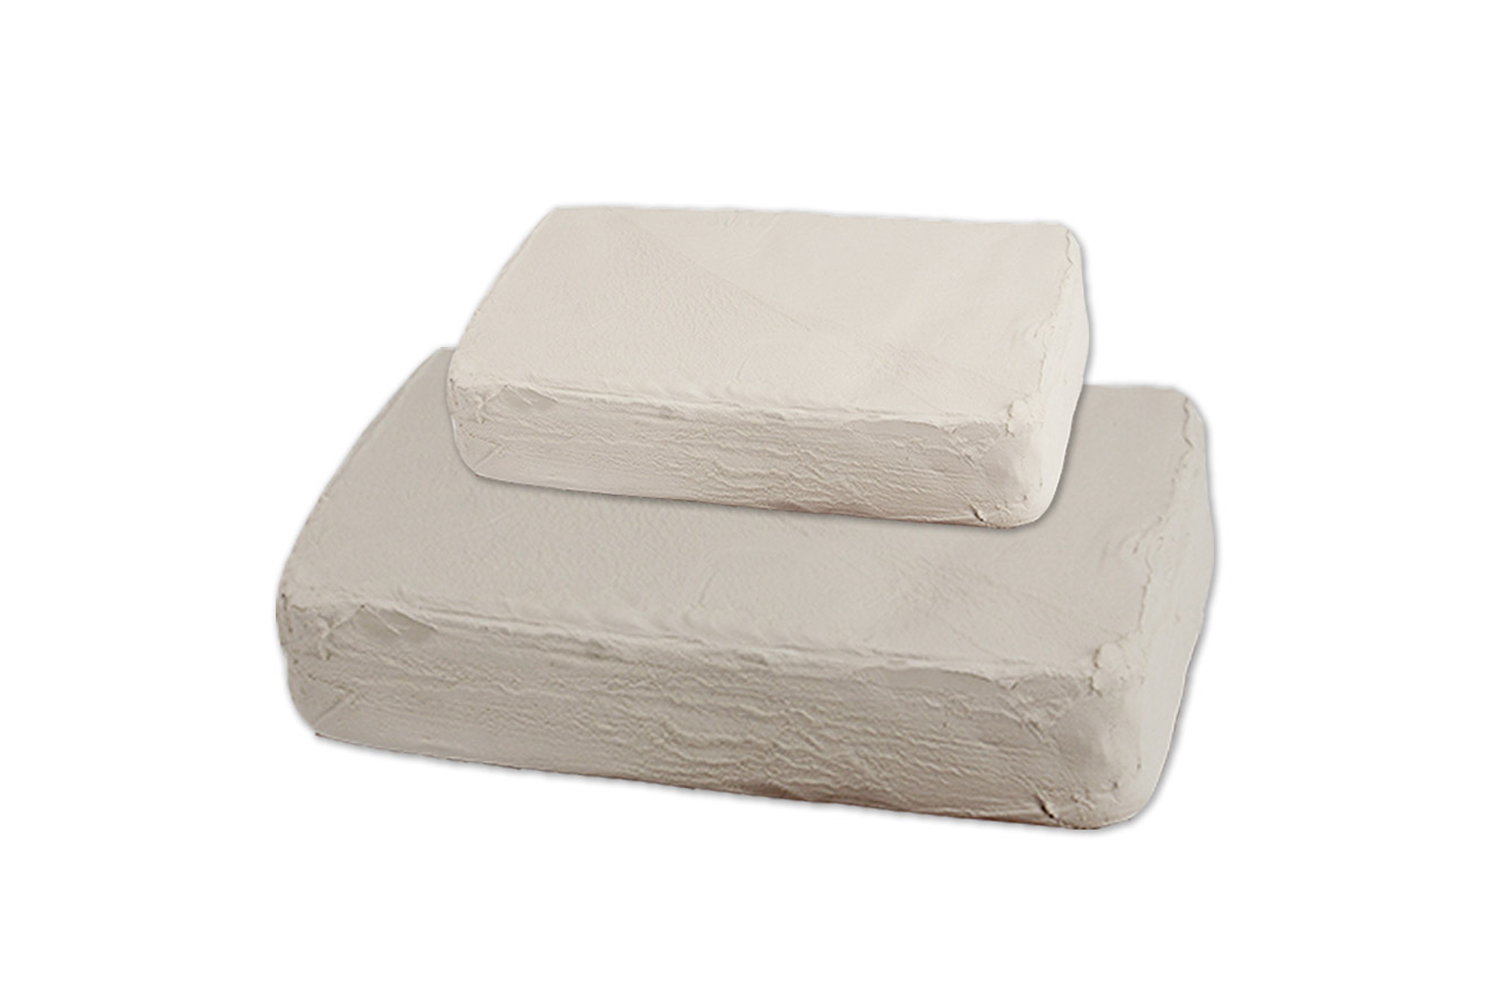 Argile PLUS® blanche - 10kg